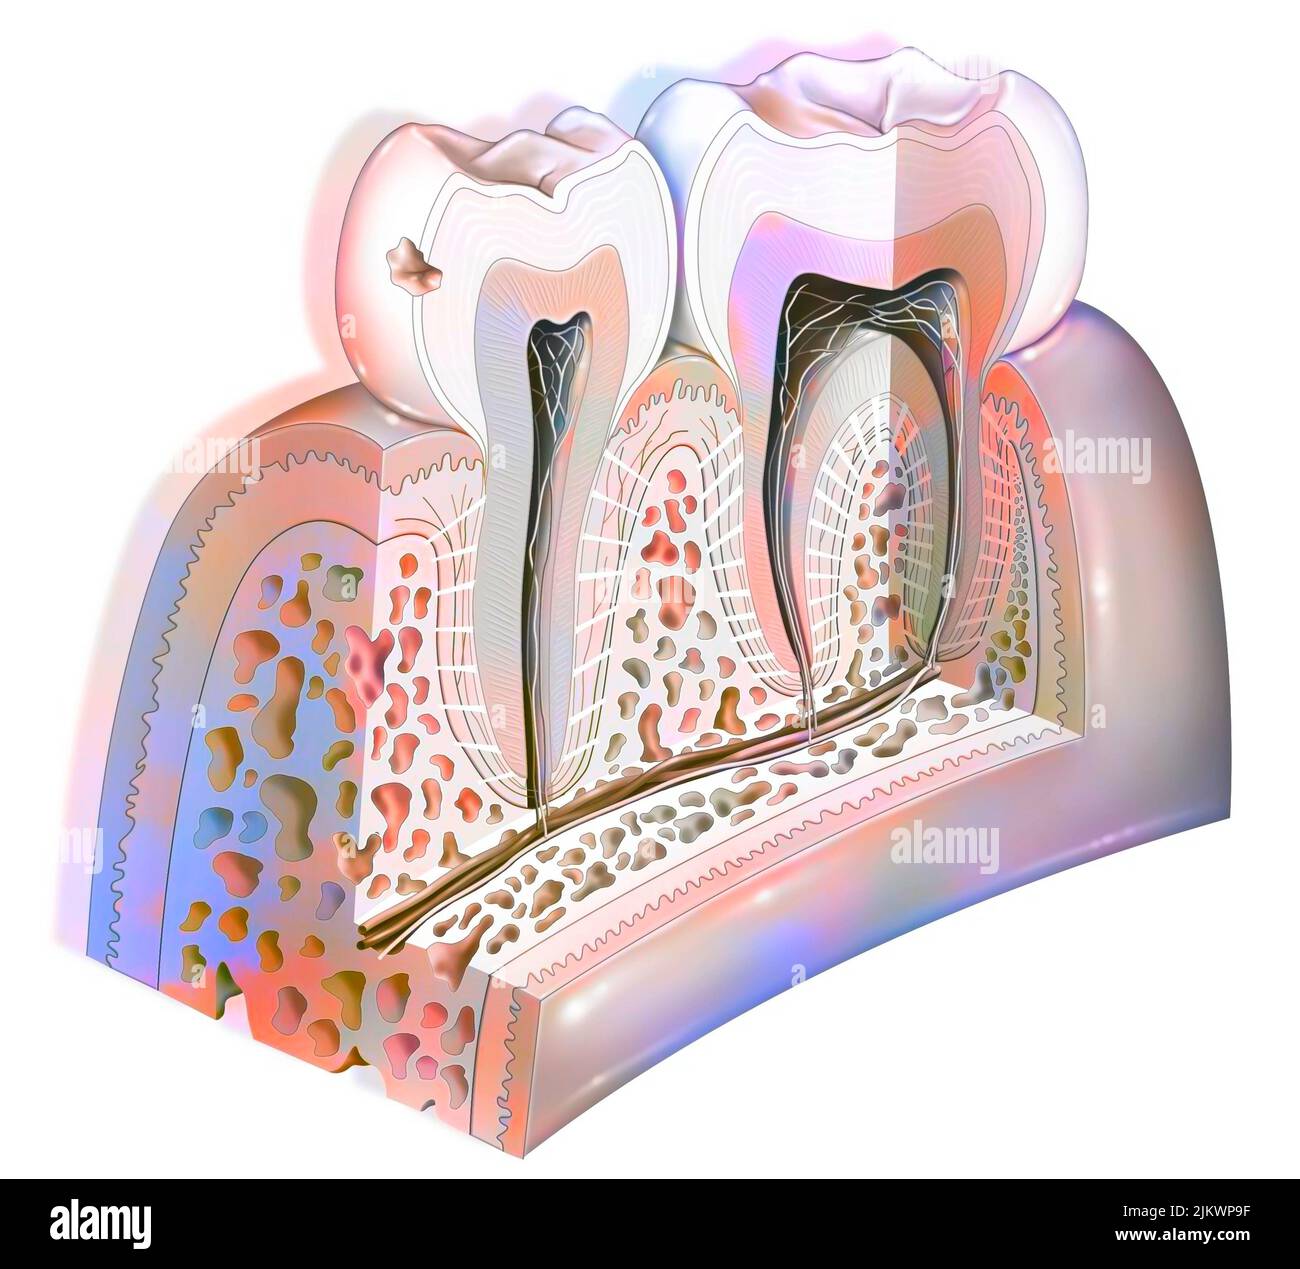 Placa dental: Primera etapa de caries. Foto de stock